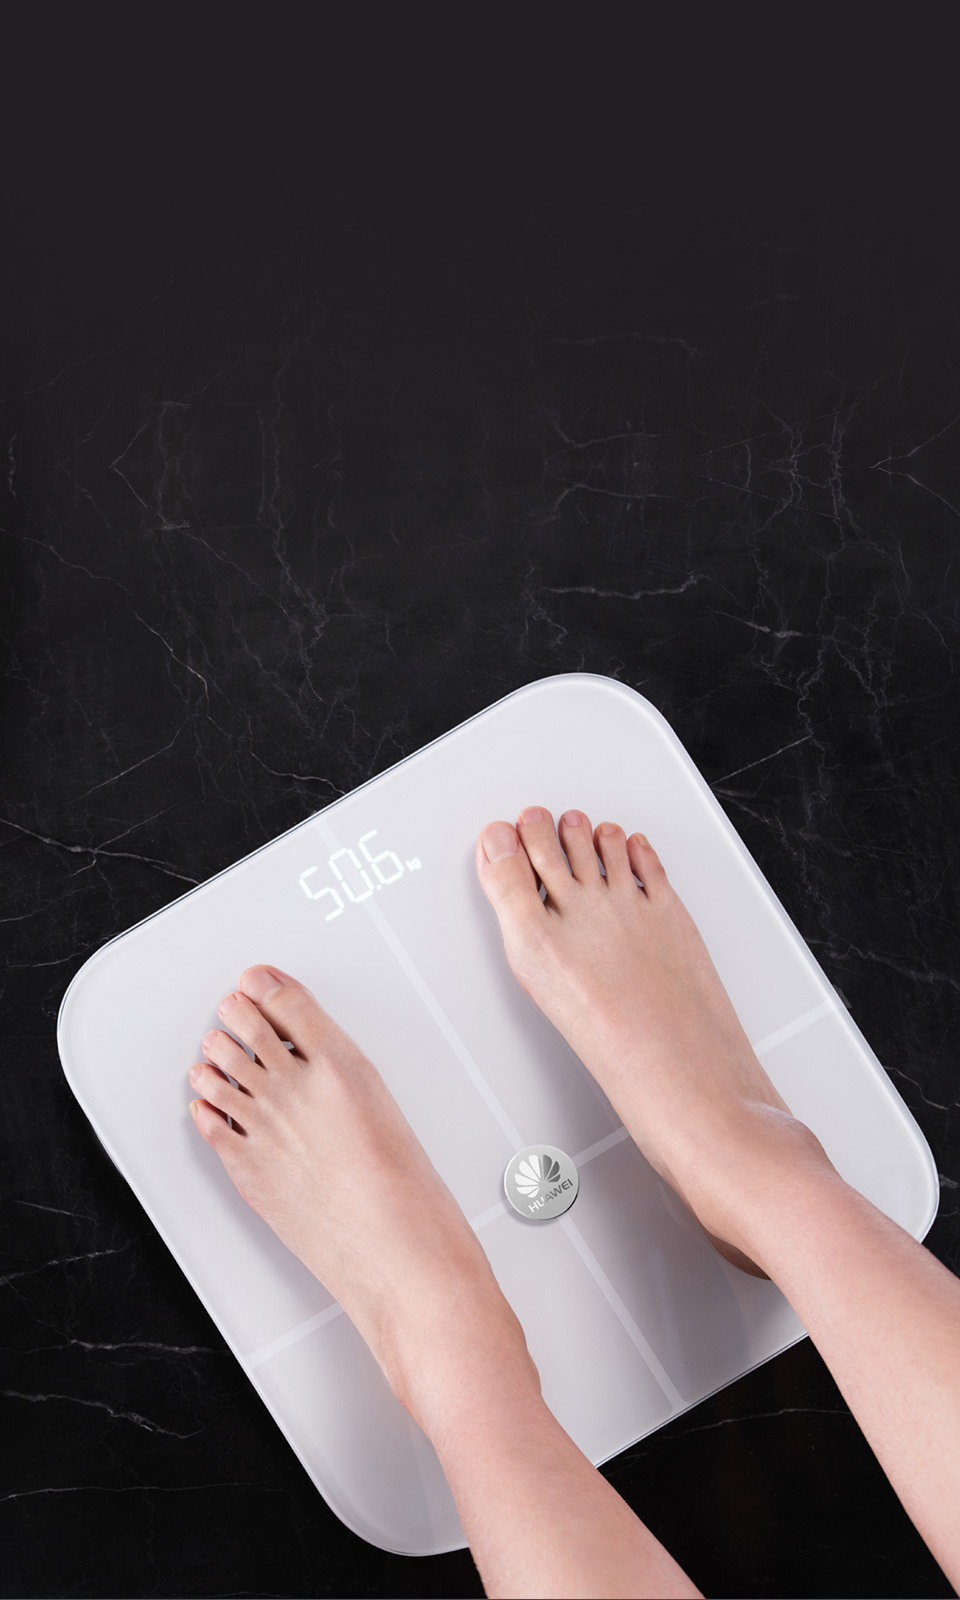 View Body Weight & Fat Offline